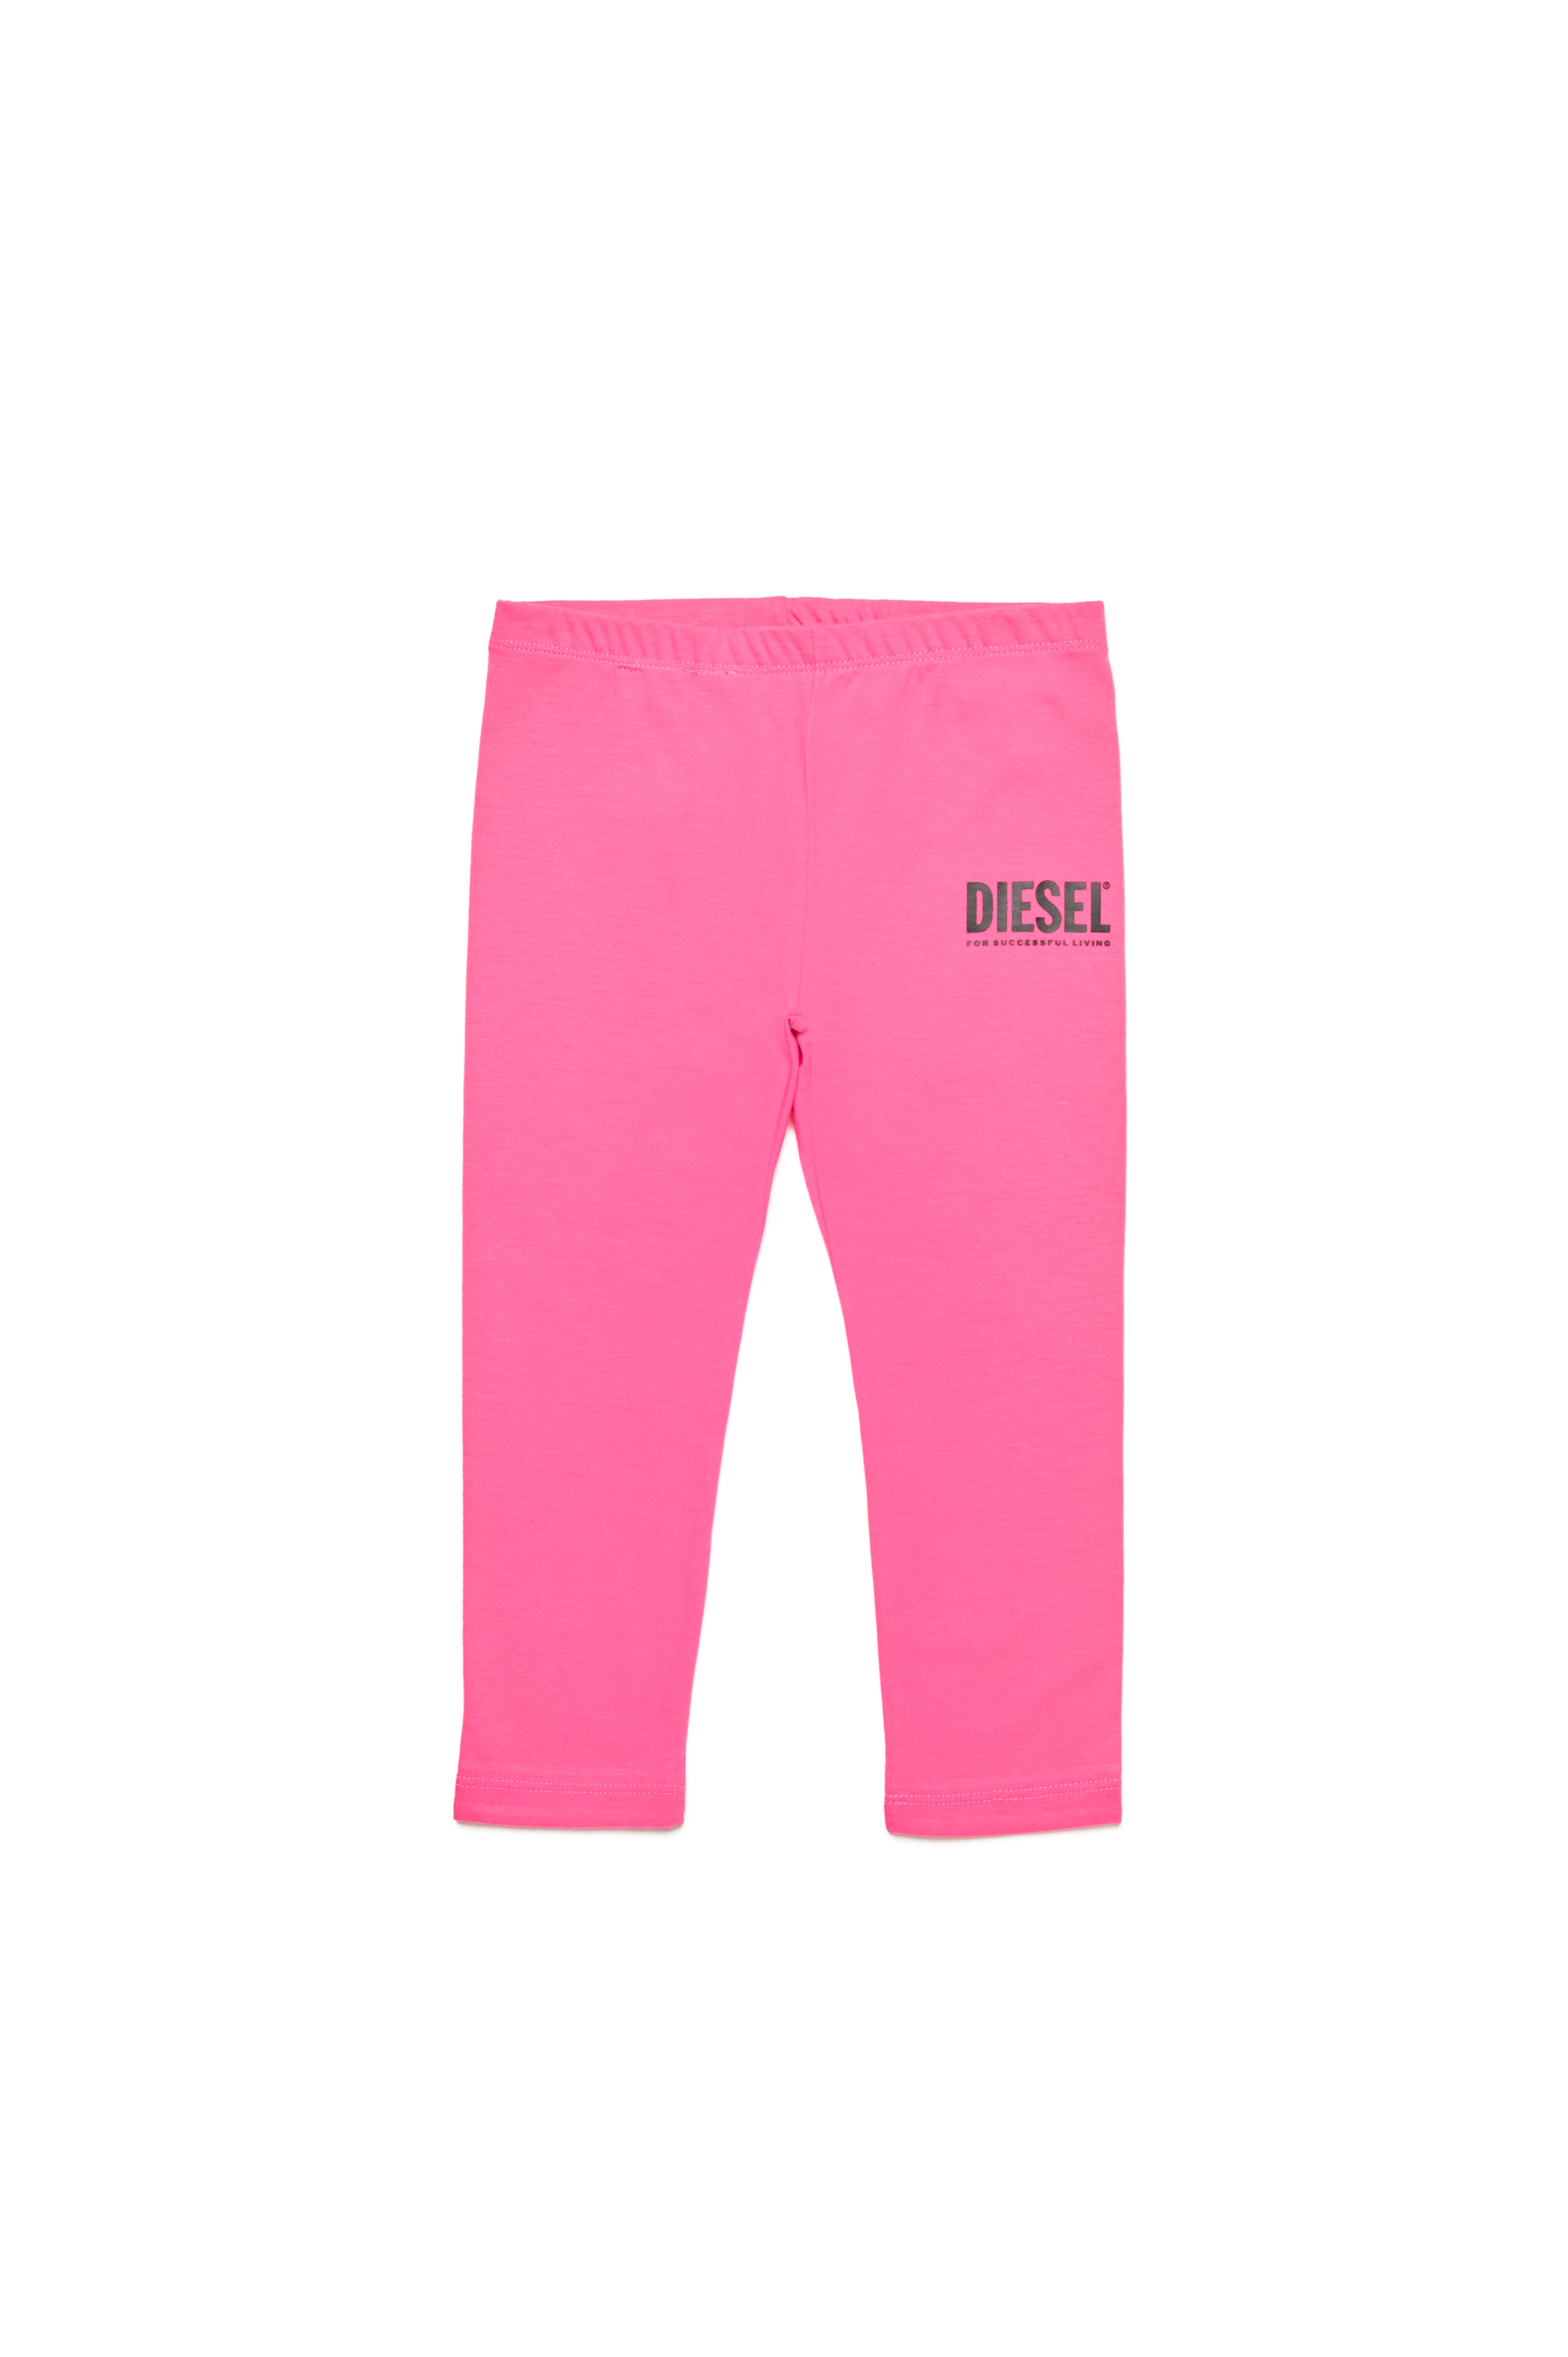 Diesel - Pantalones de algodón con estampado de logotipo - Pantalones - Mujer - Rosa